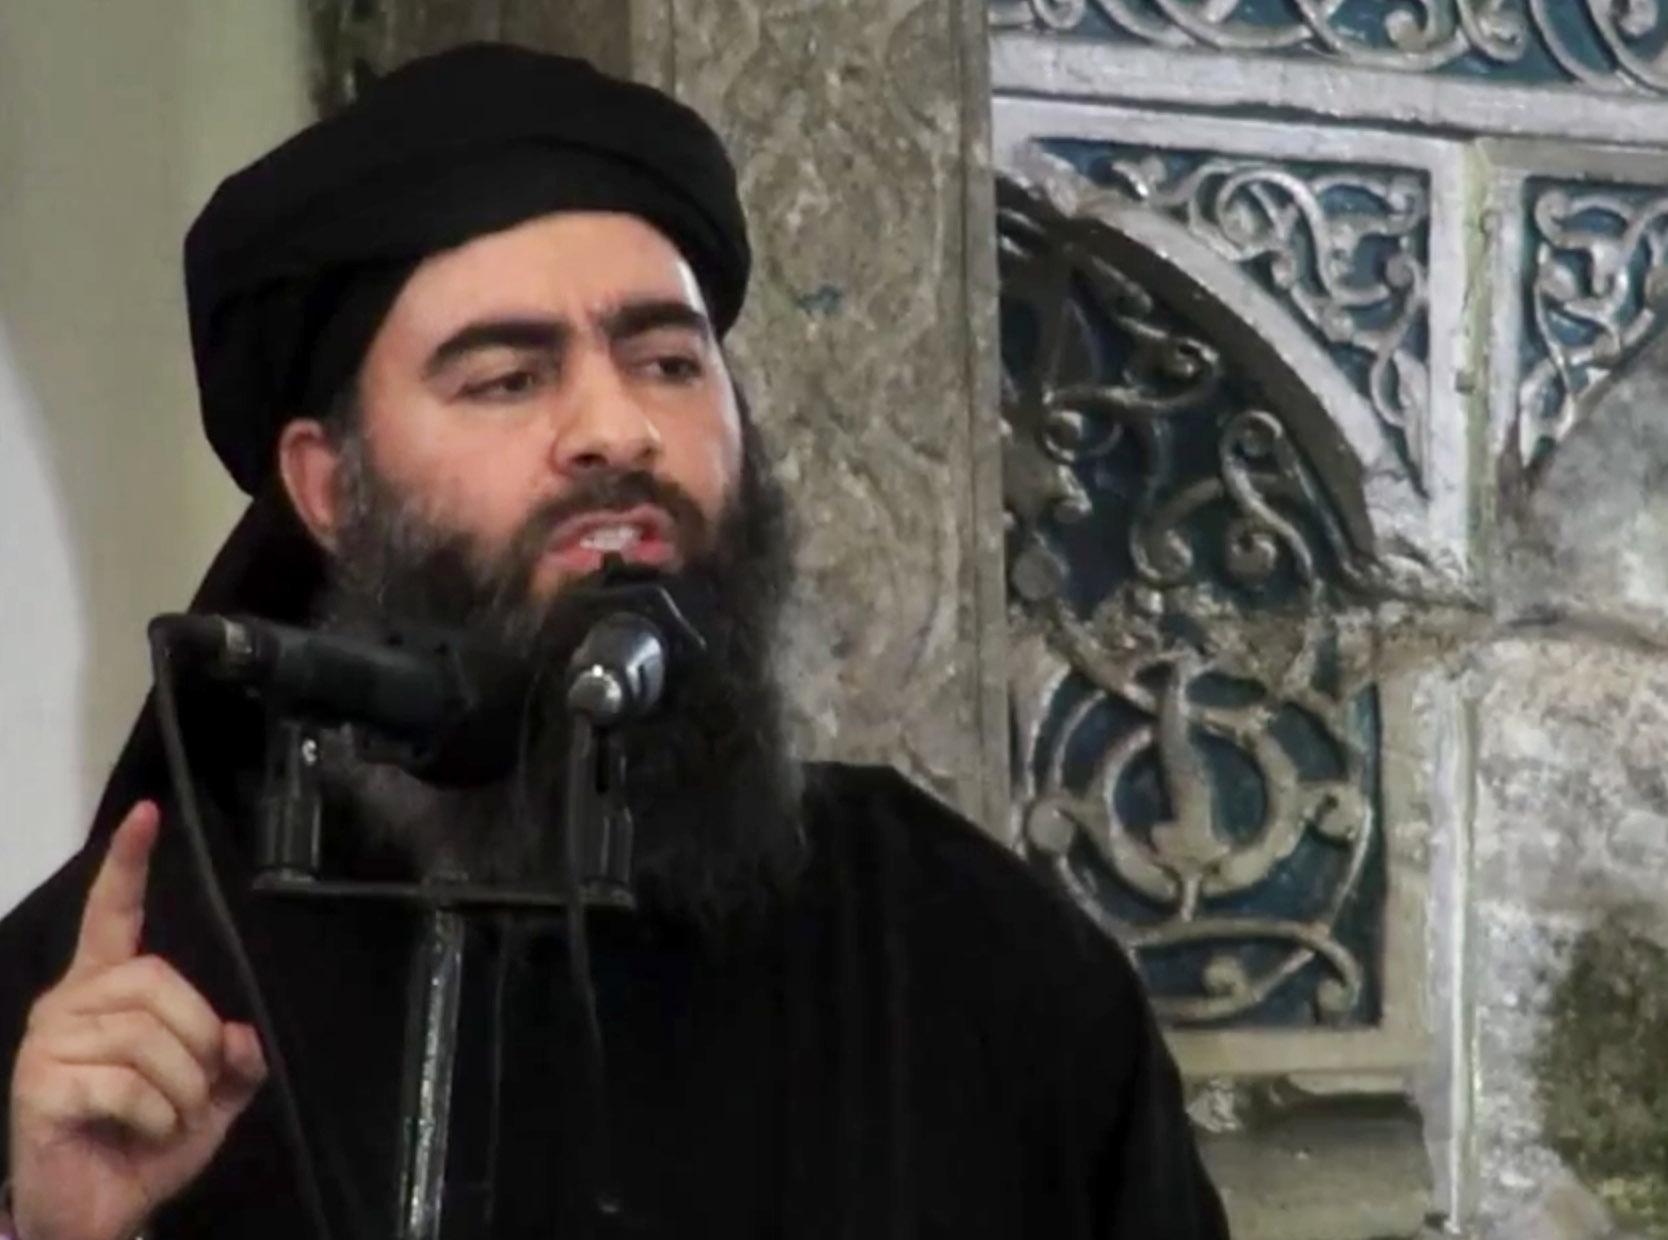 IS-leder Abu Bakr al-Baghdadi og hans tilhengere oppfatter ideen om menneskerettigheter nærmest som djevelens verk, skriver kronikkforfatteren.